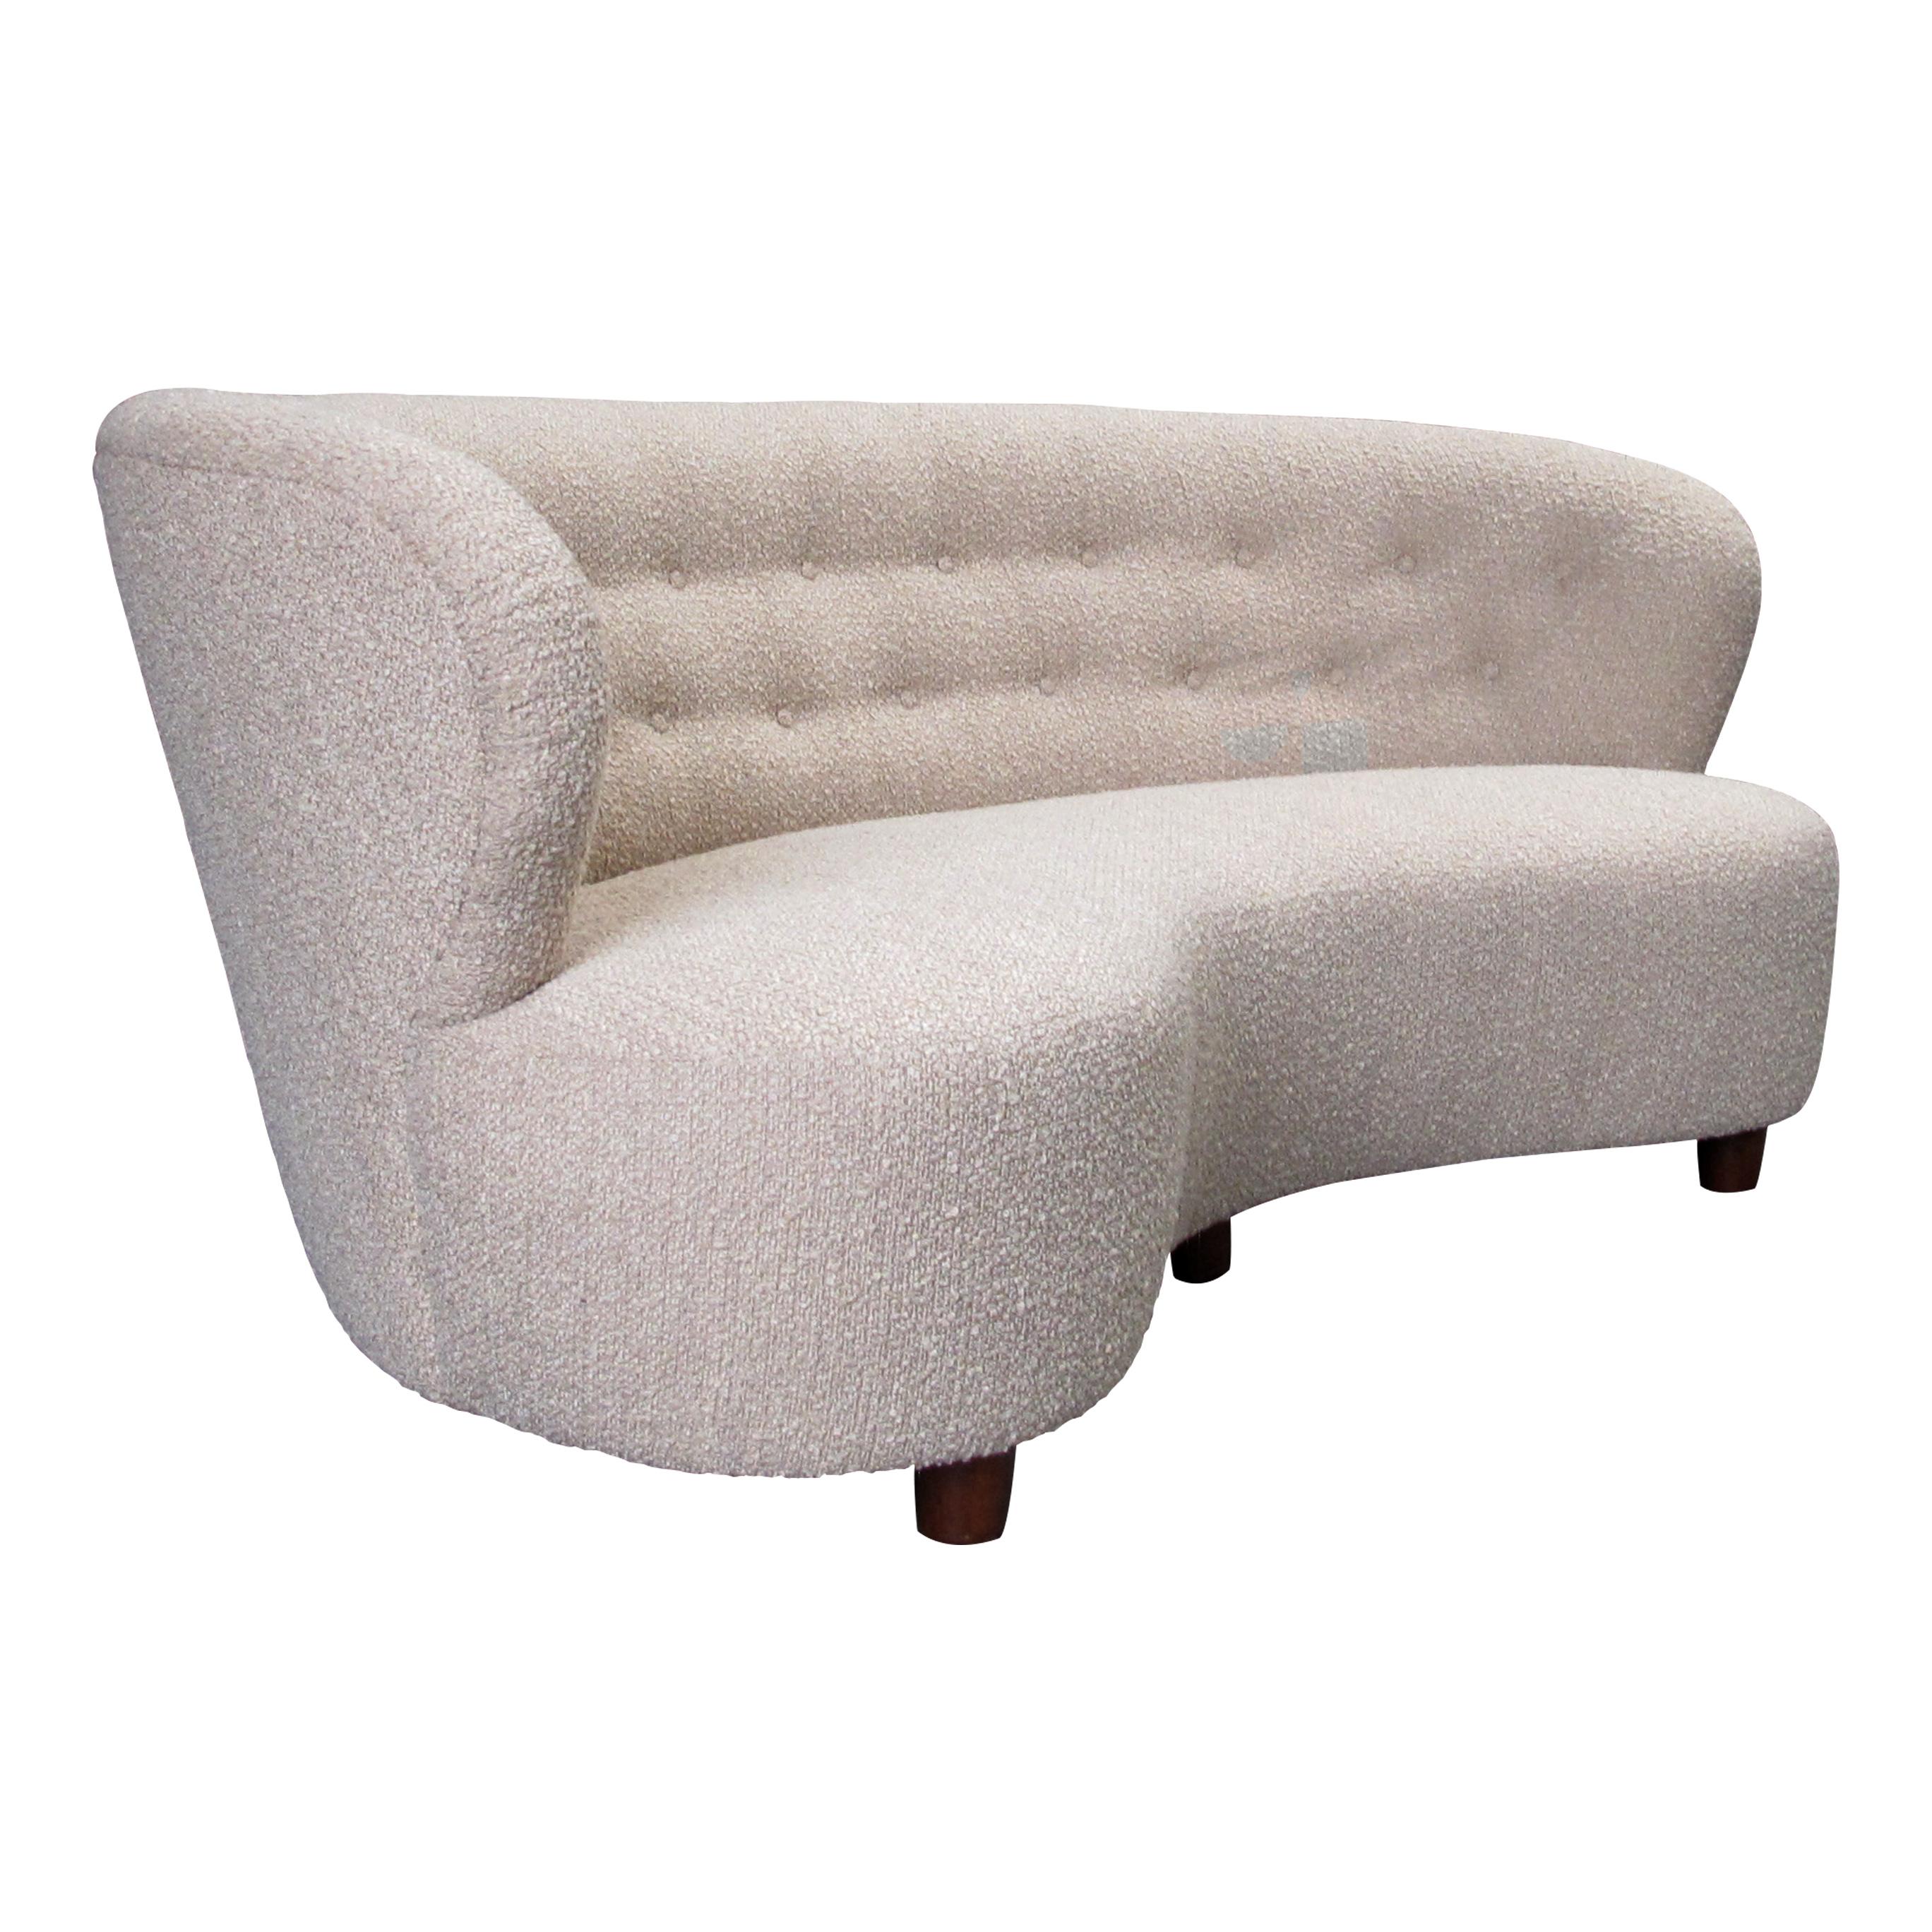 Ce grand canapé confortable est un classique du design moderne danois des années 1940. Il présente un design simple et élégant, avec des lignes épurées et un dossier incurvé. Le cadre en chêne est robuste et bien fabriqué, et le nouveau revêtement